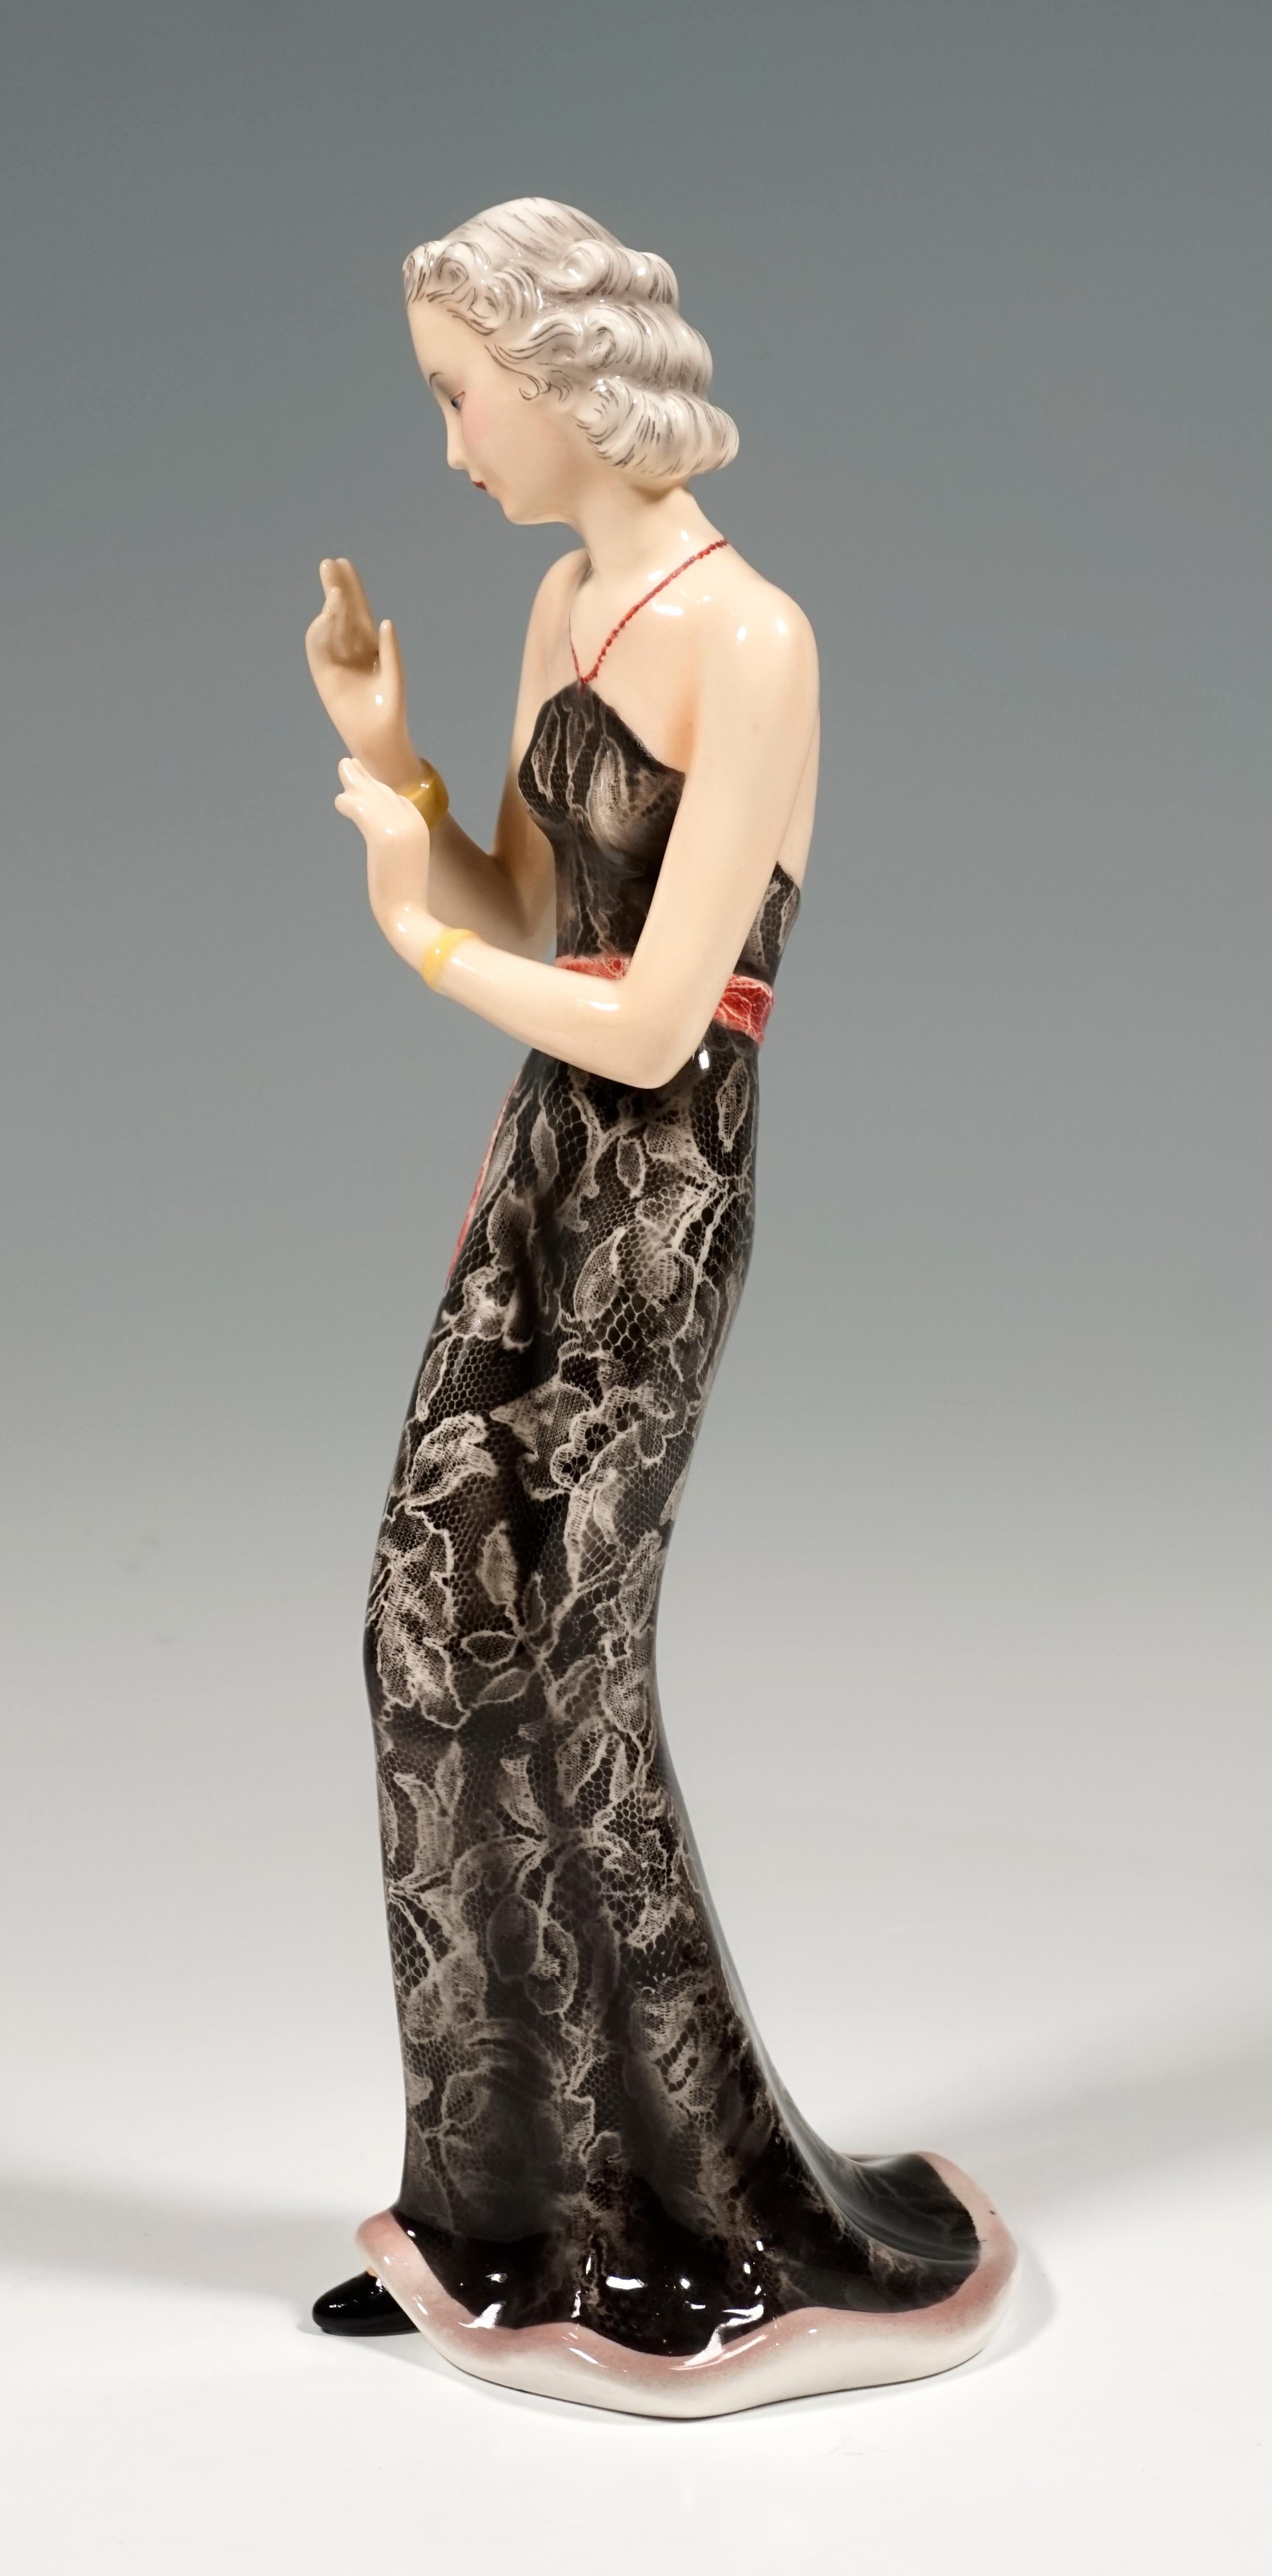 Darstellung einer eleganten Dame mit kunstvoll hochgestecktem Haar in einem langen, engen, trägerlosen Spitzenkleid in Schwarz mit tiefem Rückenausschnitt und einem roten, langen Gürtel, die ihre Arme in einer eleganten Geste vor sich hält. Ihr